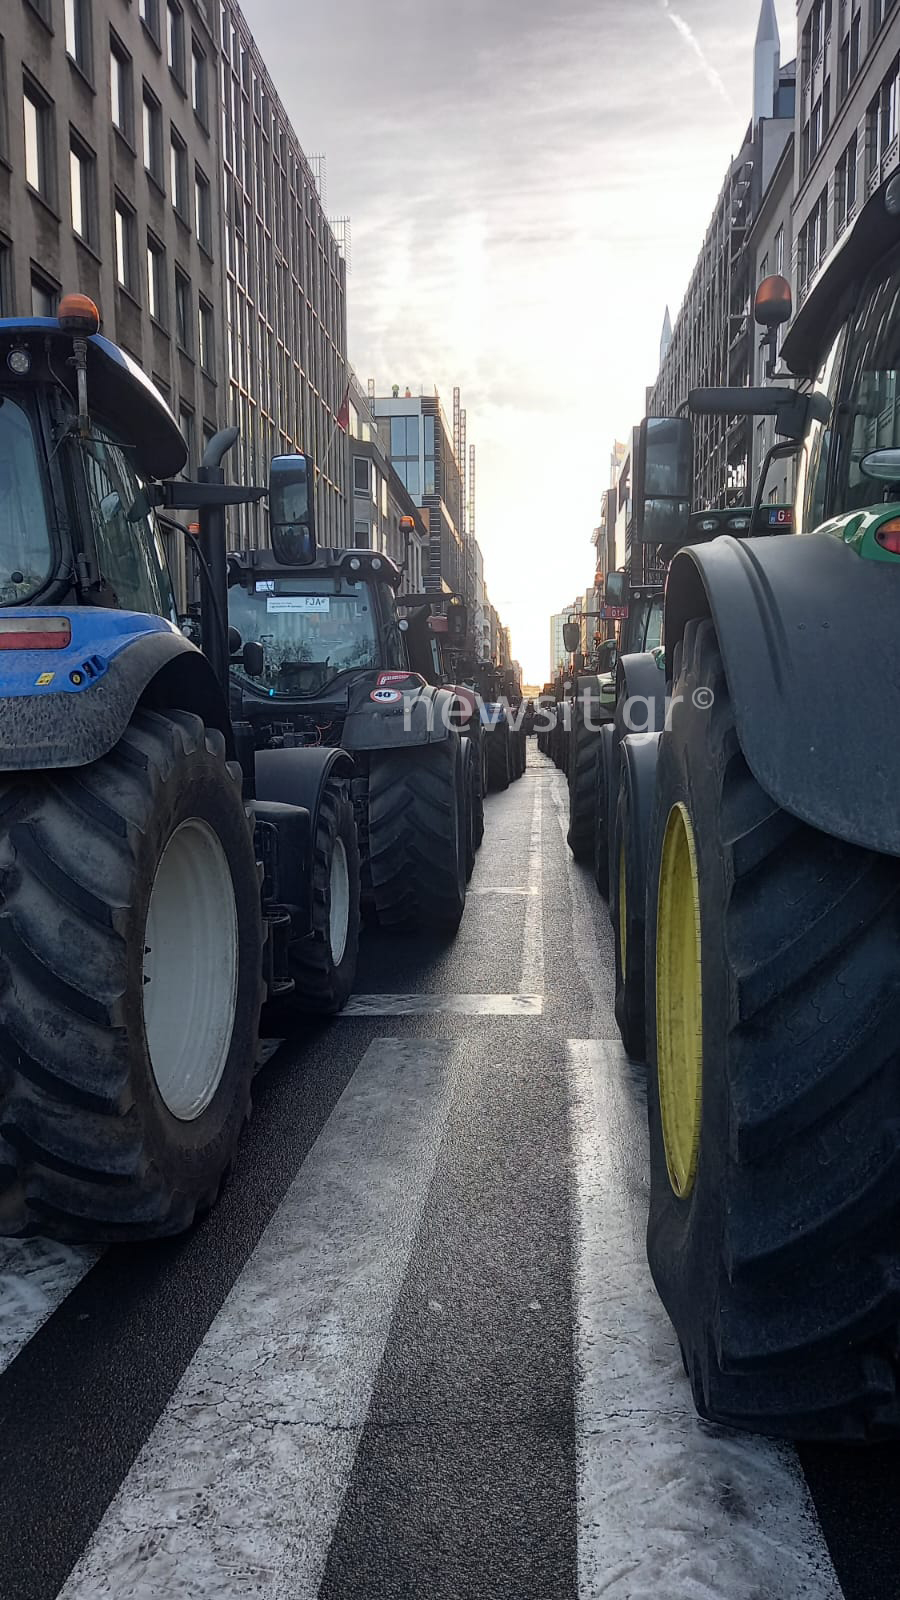 Σύνοδος Κορυφής: Οι αγρότες «γέμισαν» τις Βρυξέλλες με 1.000 τρακτέρ – Πετροπόλεμος και επεισόδια